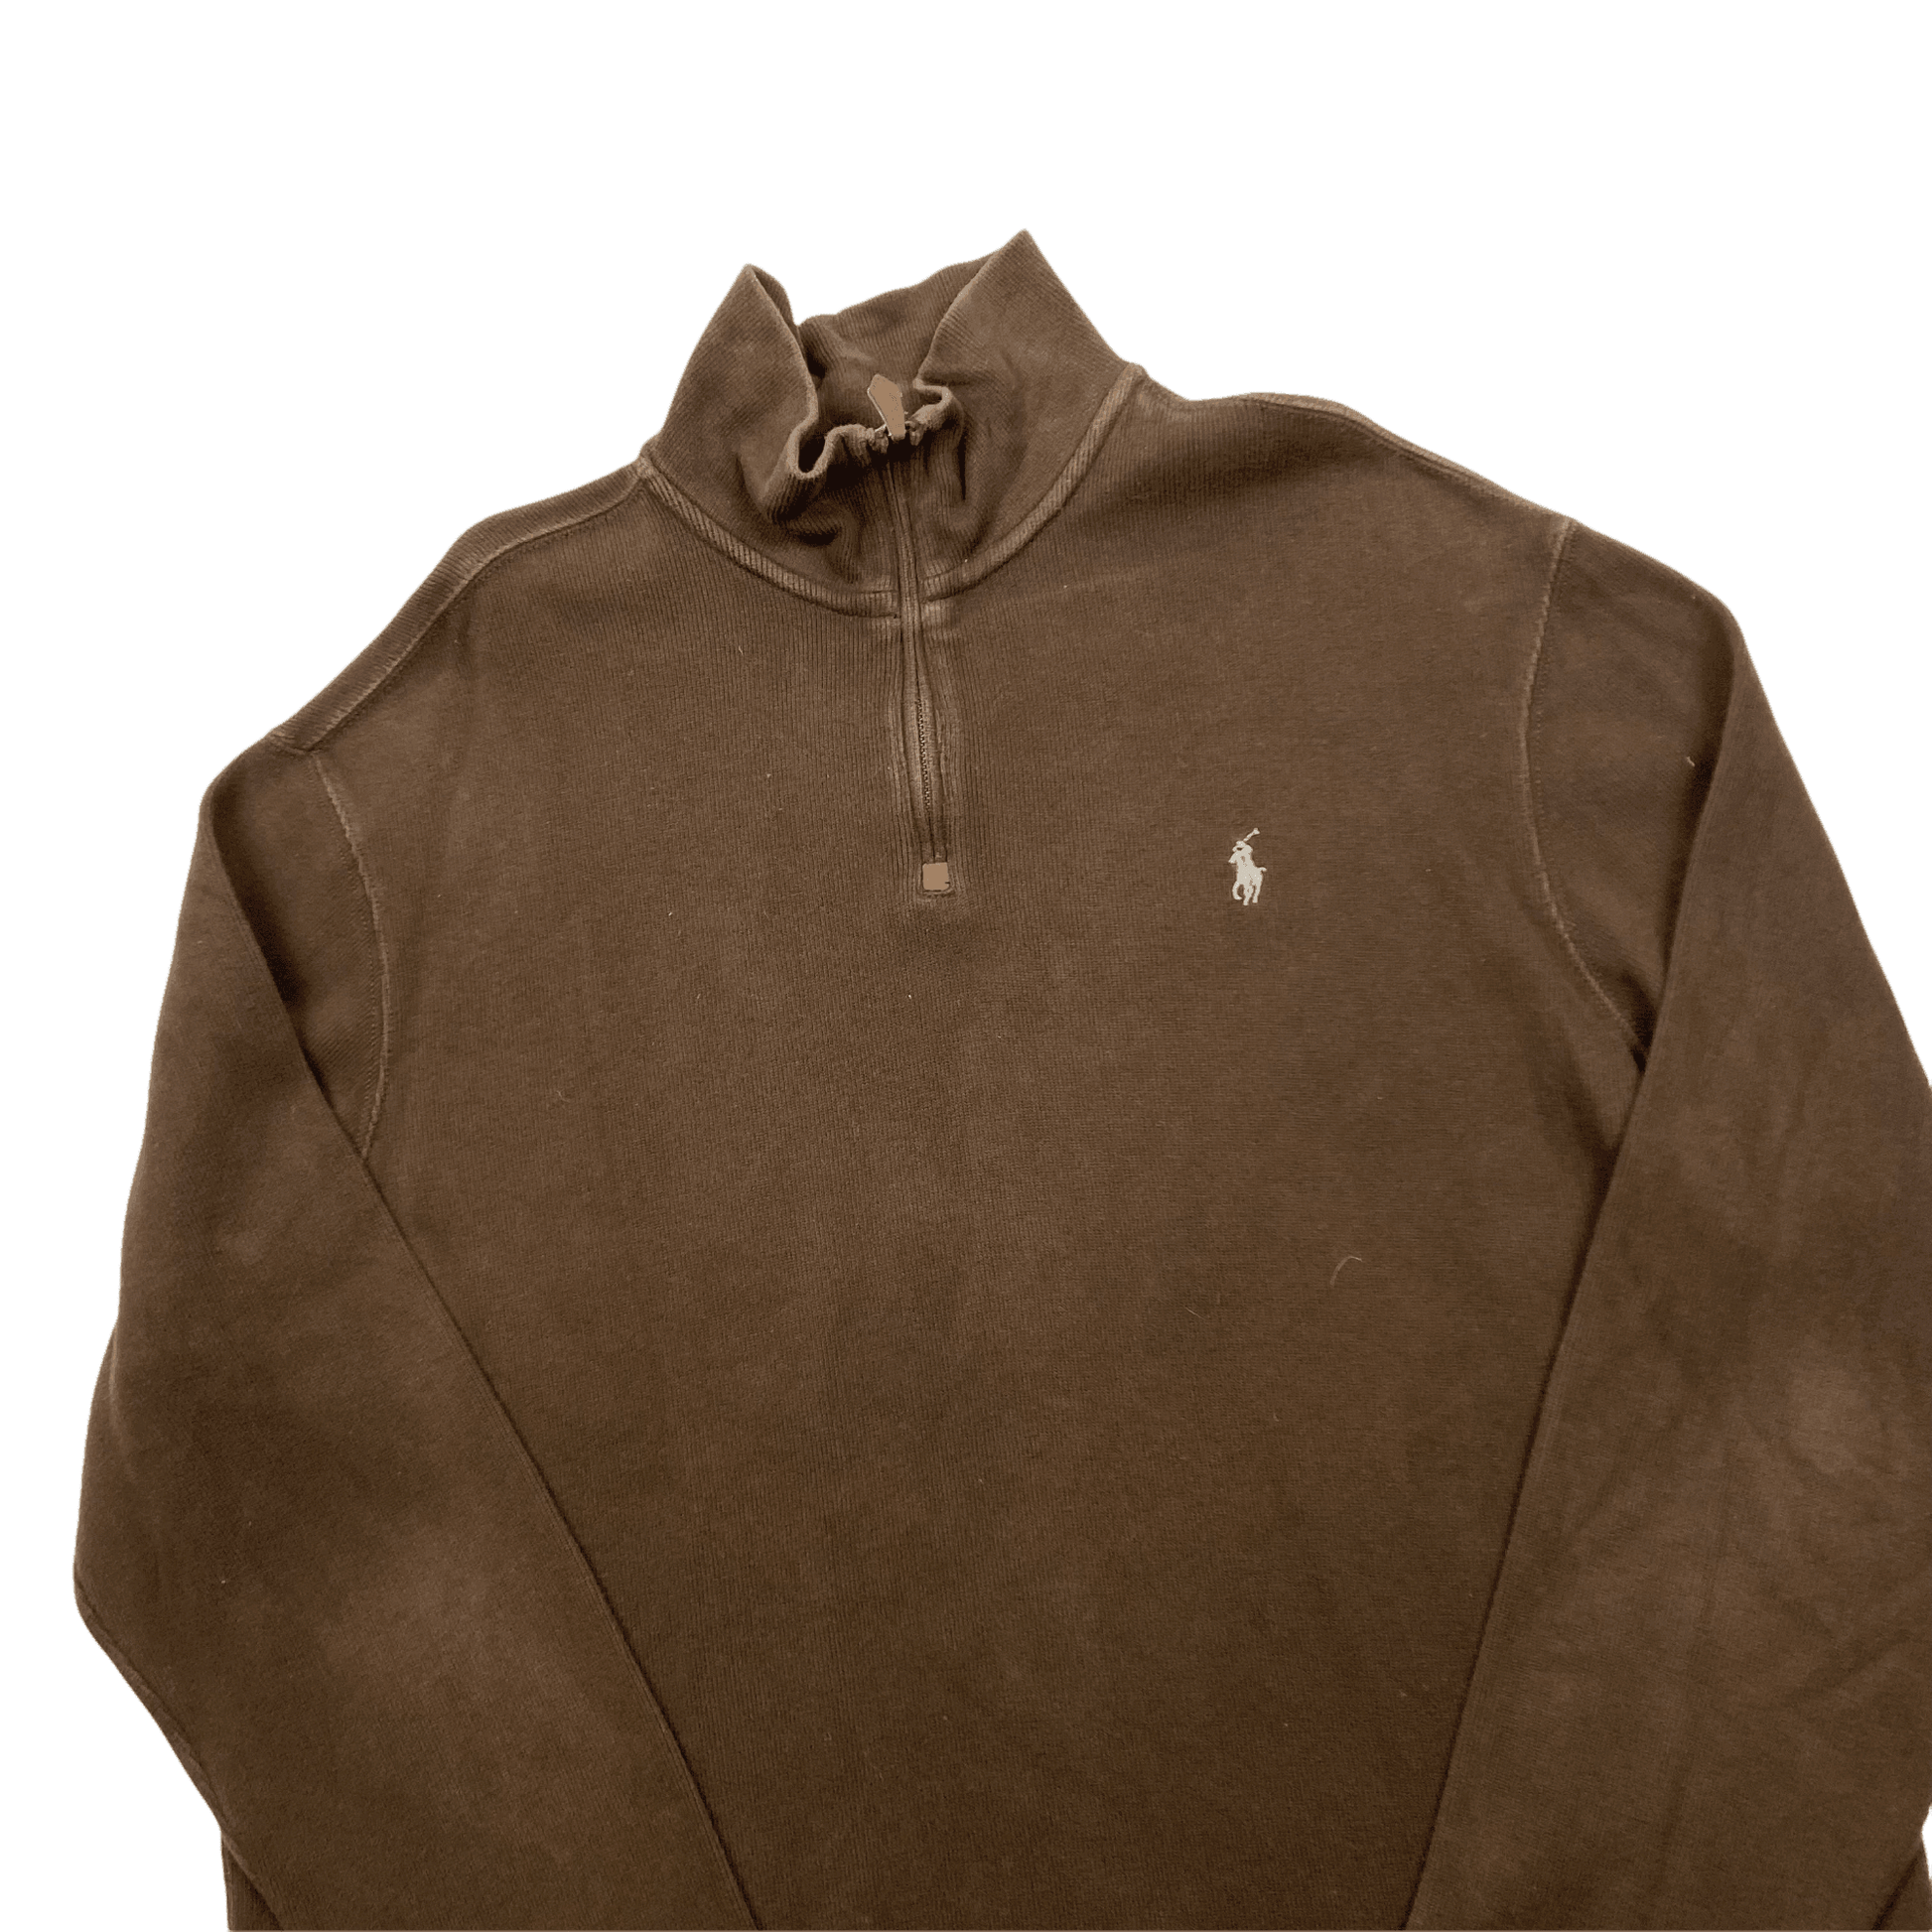 Vintage 90s Brown Polo Ralph Lauren Quarter Zip Sweatshirt - Extra Large - The Streetwear Studio